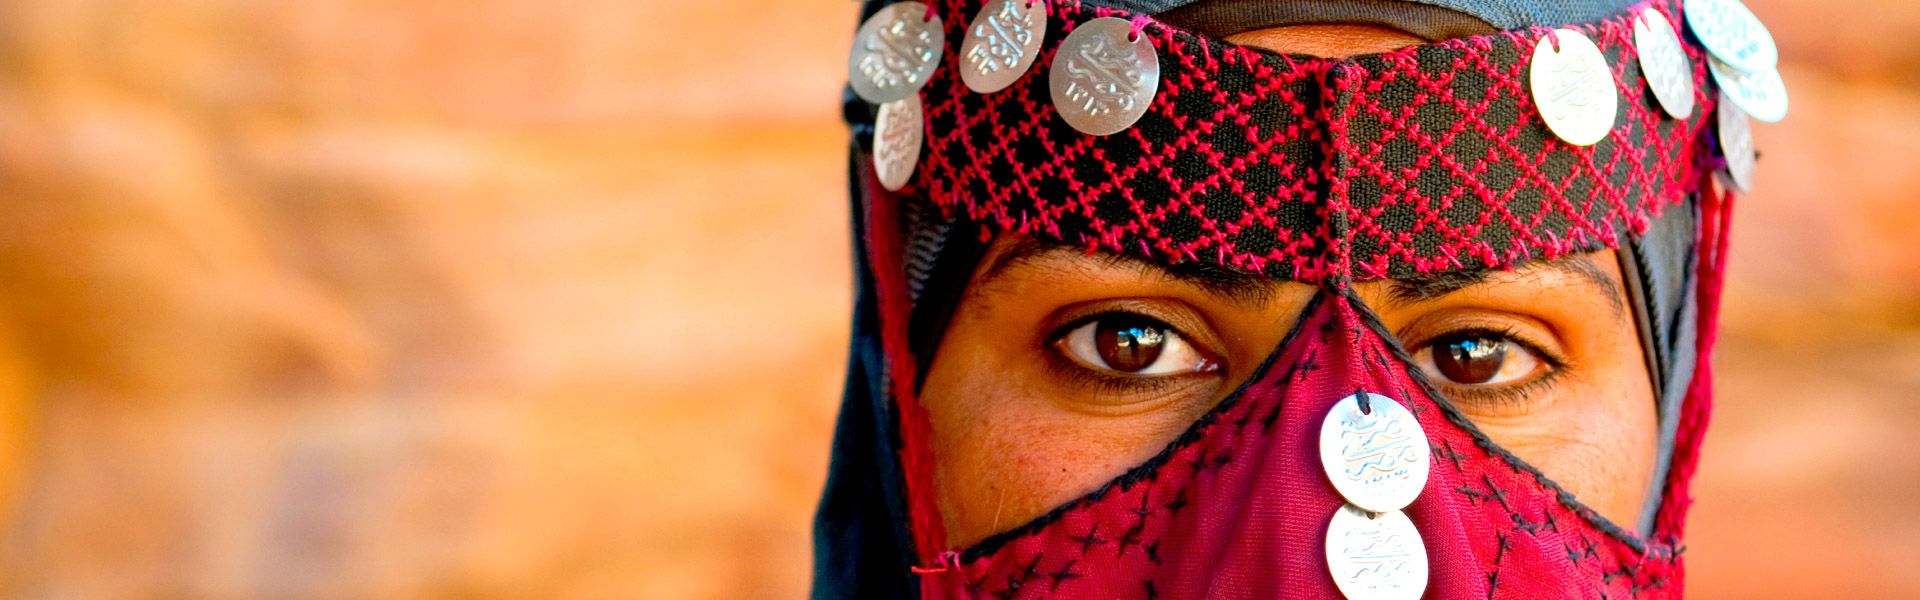 Portrait einer Beduinenfrau |  Joel Carillet, iStockphoto.com / Chamleon